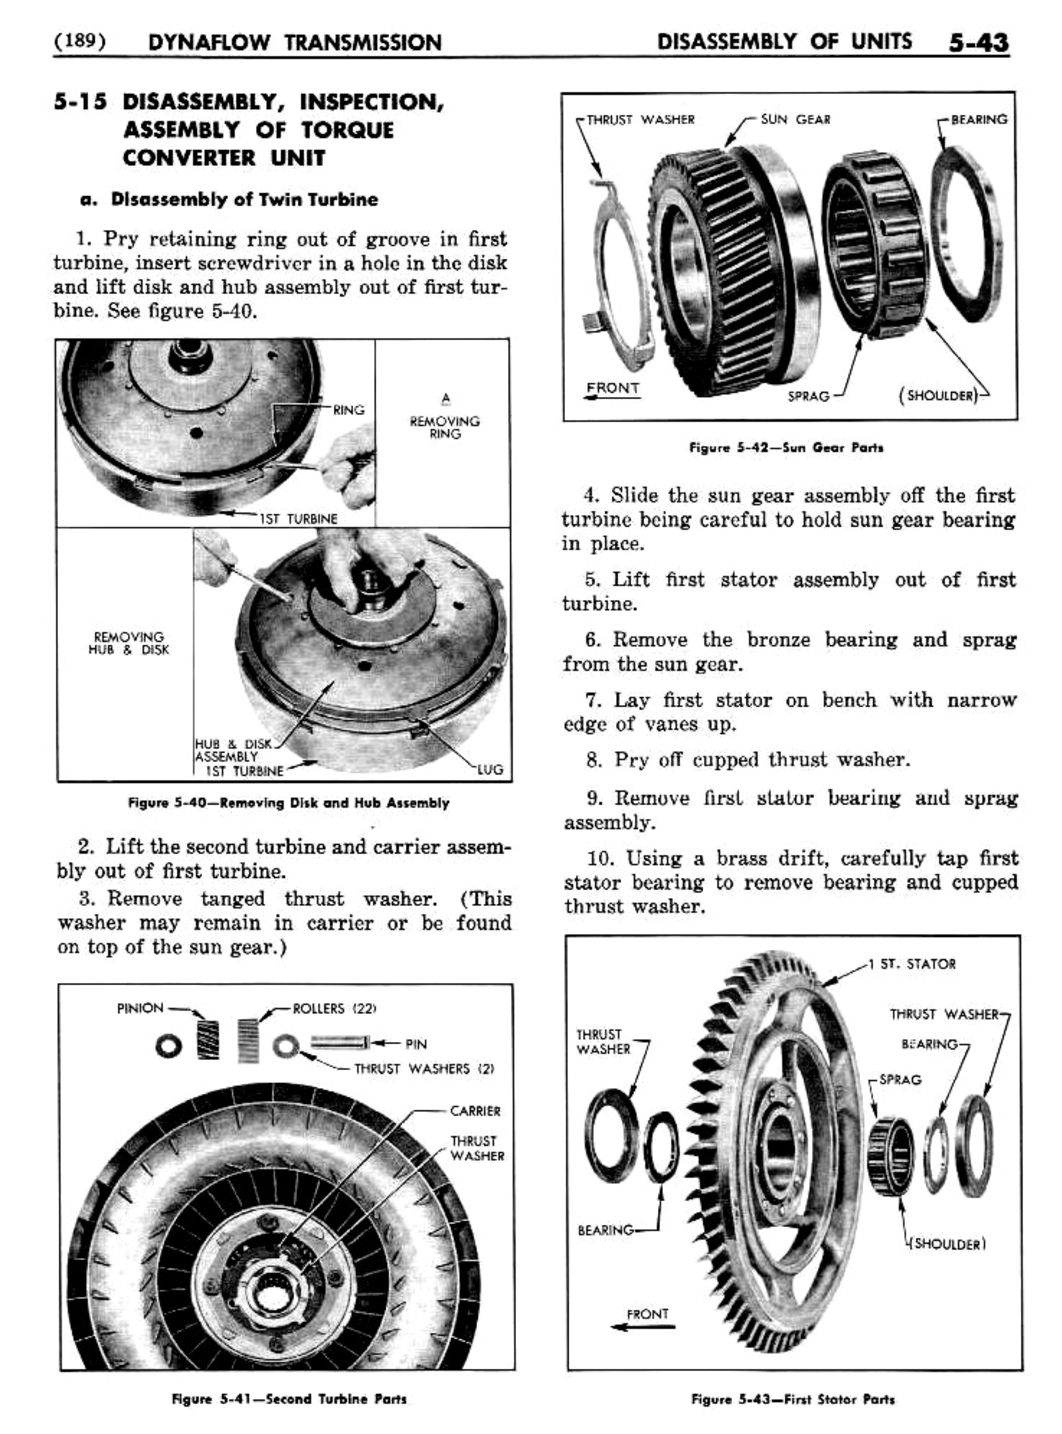 n_06 1956 Buick Shop Manual - Dynaflow-043-043.jpg